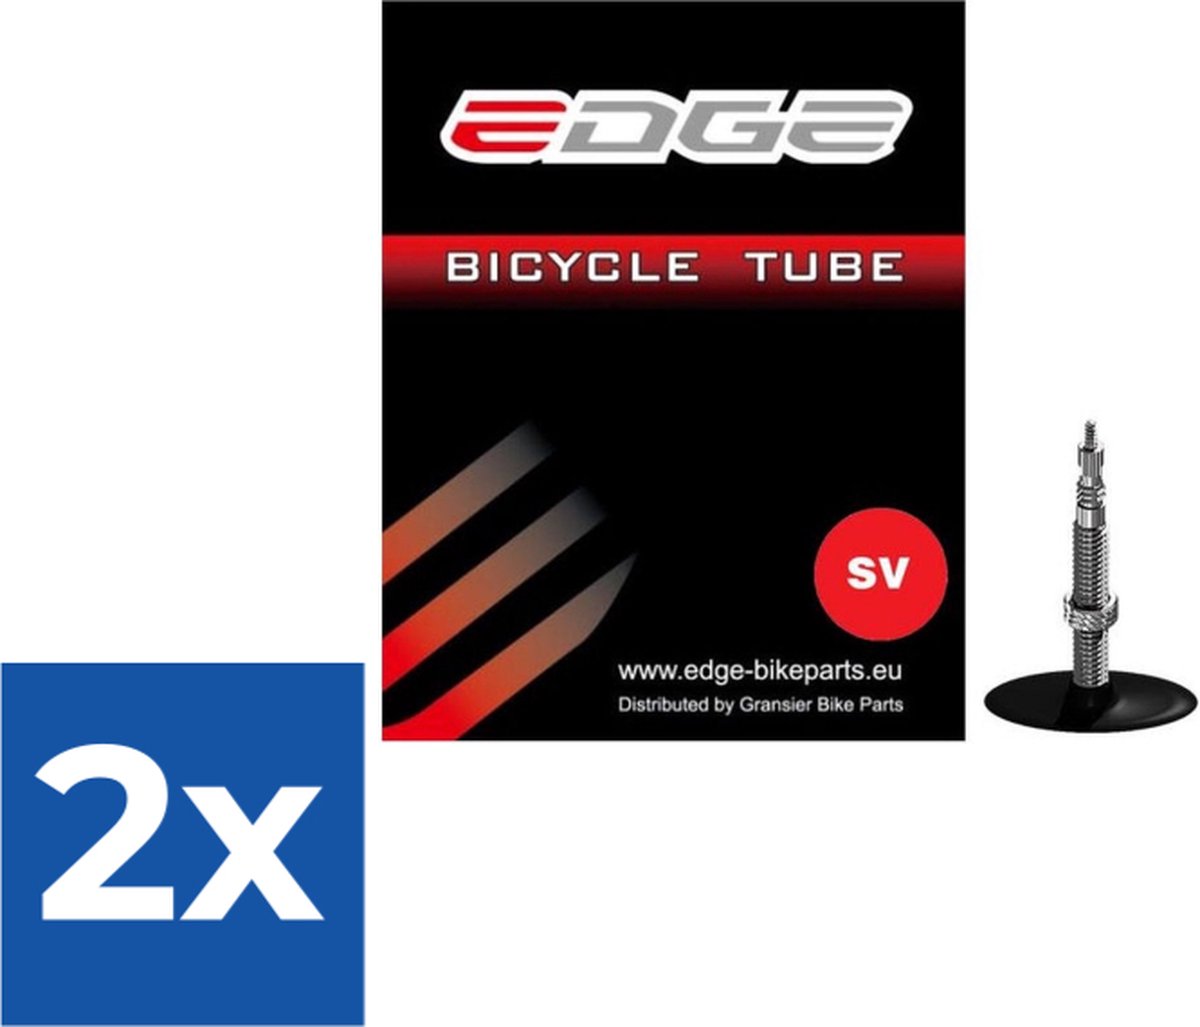 Binnenband Edge 28/29 (32/47-622) - SV40mm - Voordeelverpakking 2 stuks